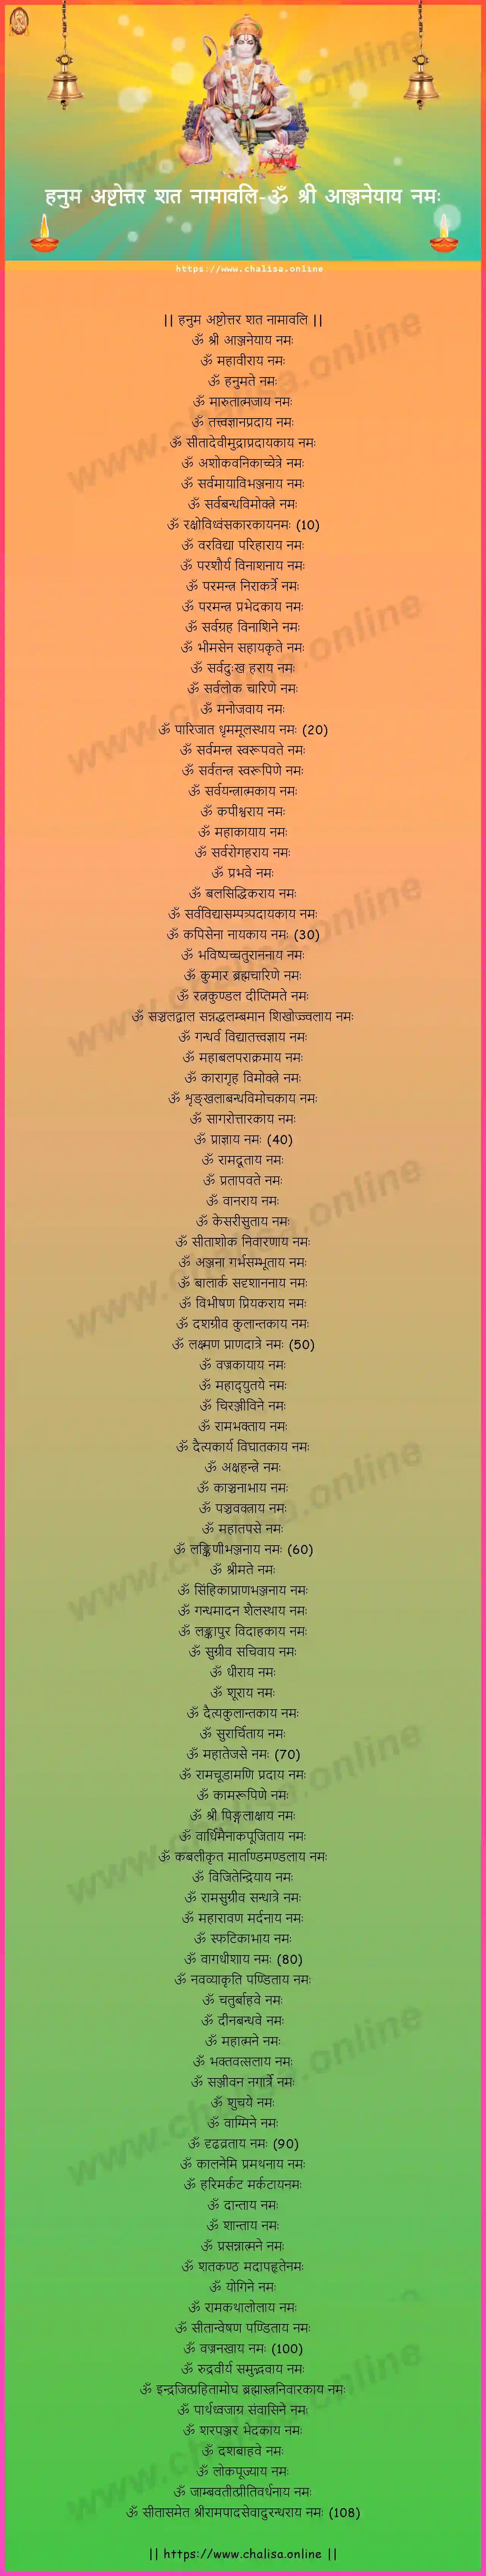 om-sri-anjaneyaya-hanuman-ashtottara-sata-namavali-devanagari-devanagari-lyrics-download